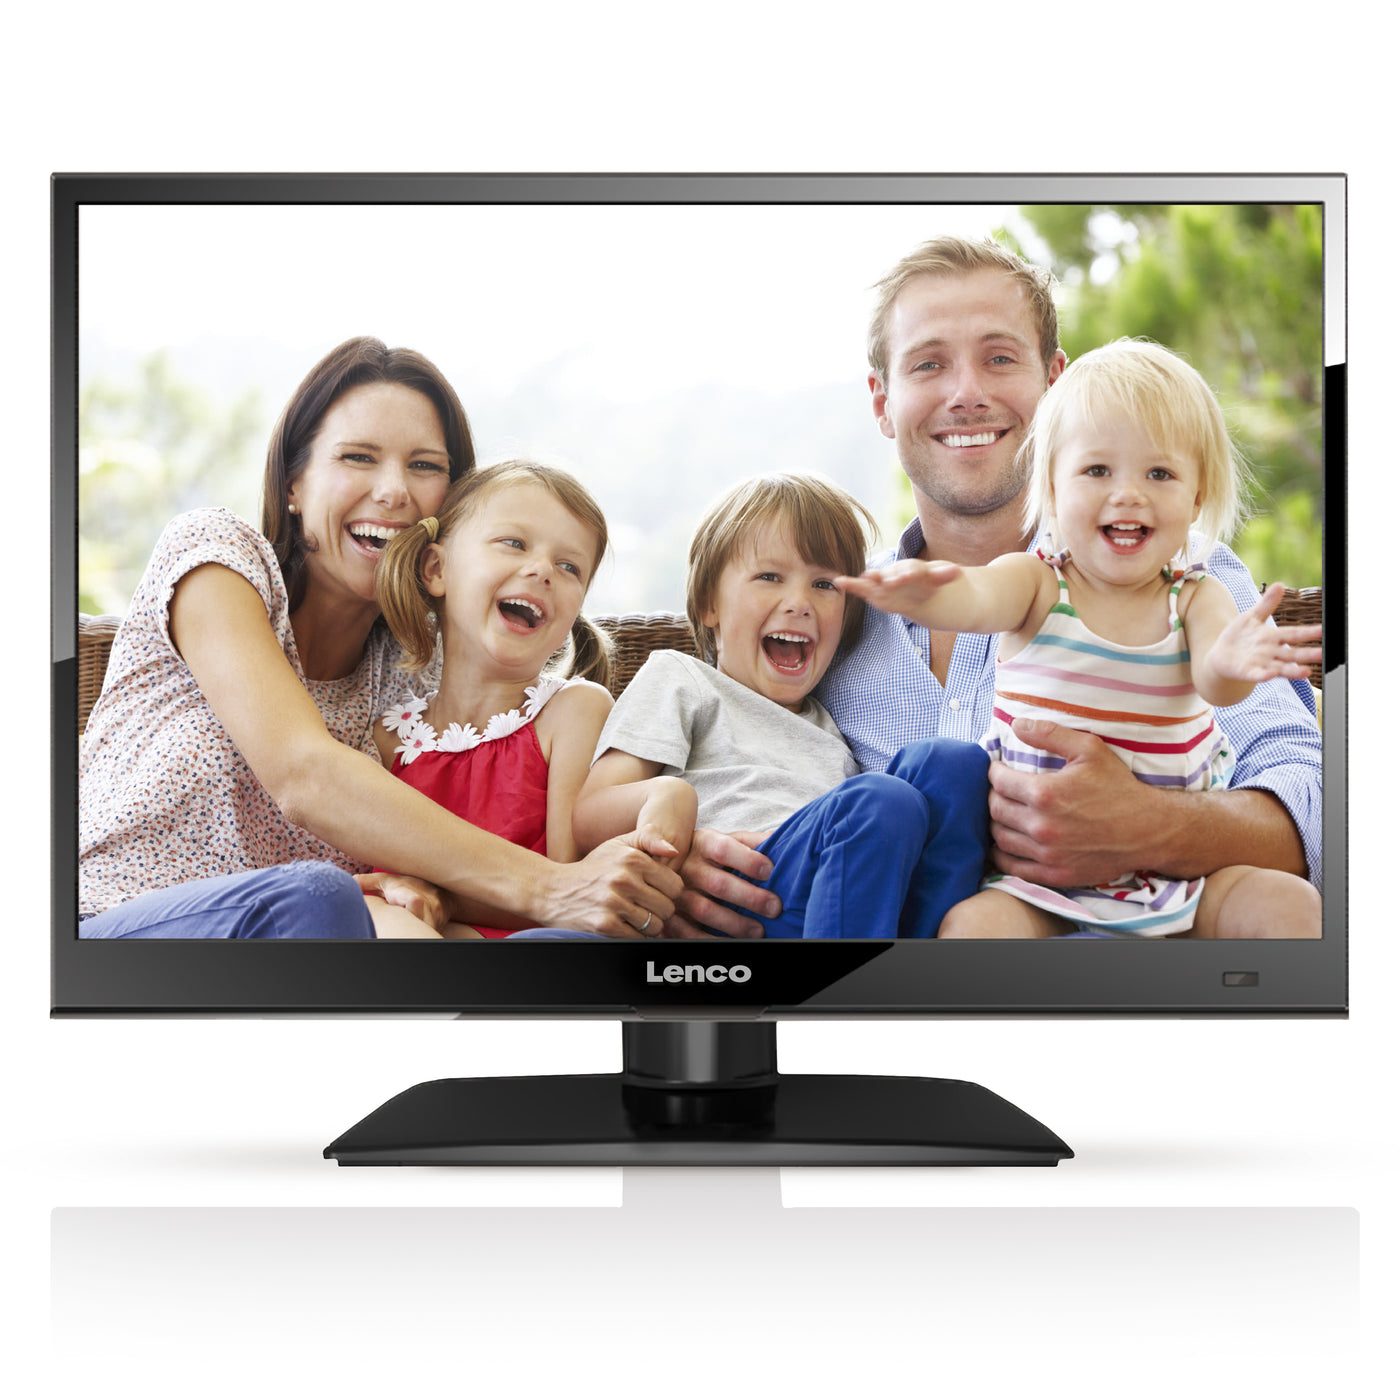 LENCO DVL-1662BK - HD LED TV 16" DVB-T/T2/S2/C Ingebouwde DVD speler - Zwart